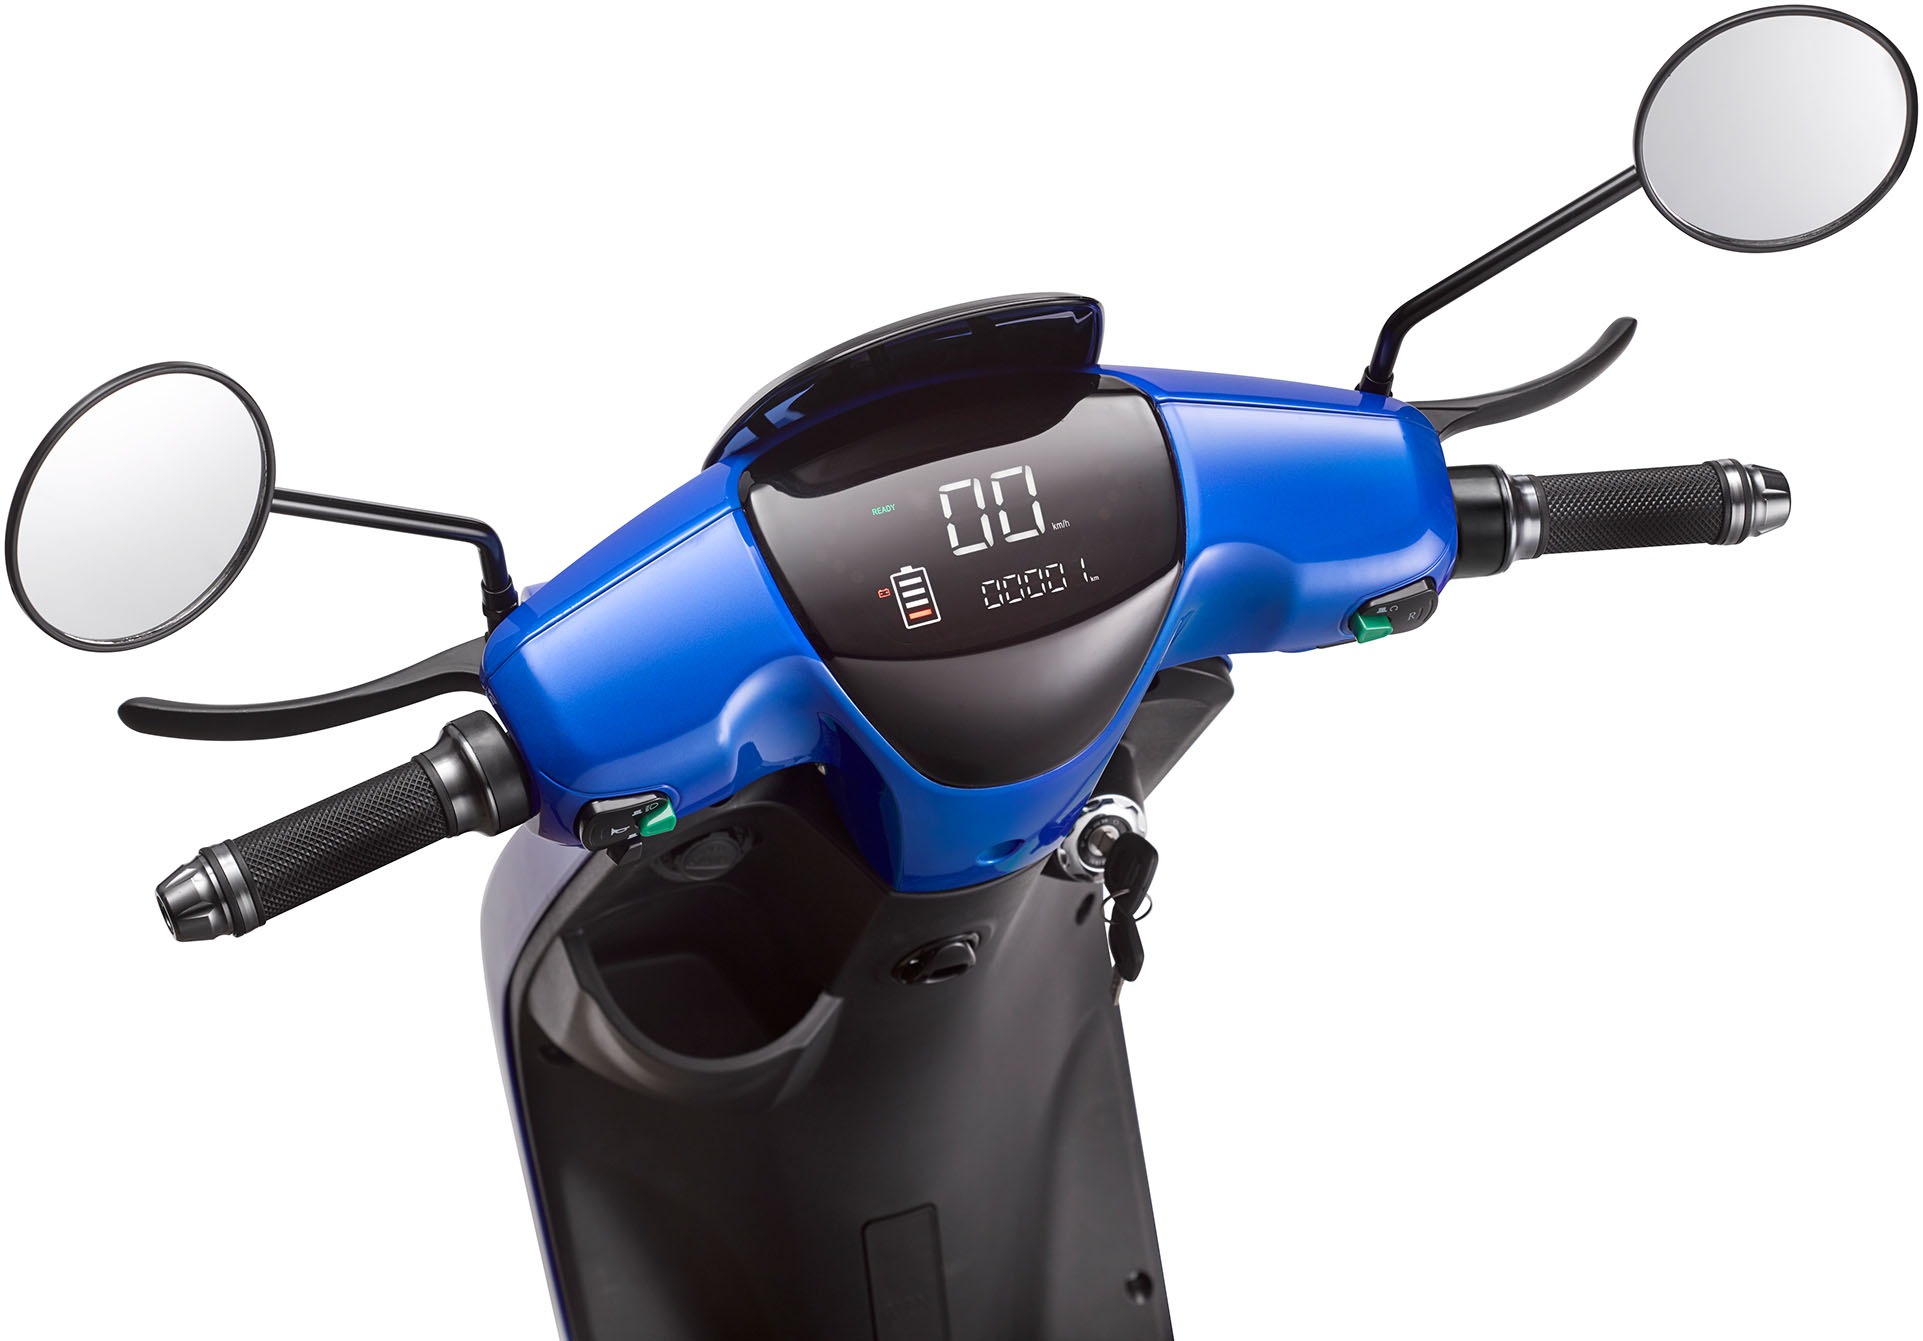 Blu:s E-Motorroller »XT2000«, bis zu 50 km Reichweite